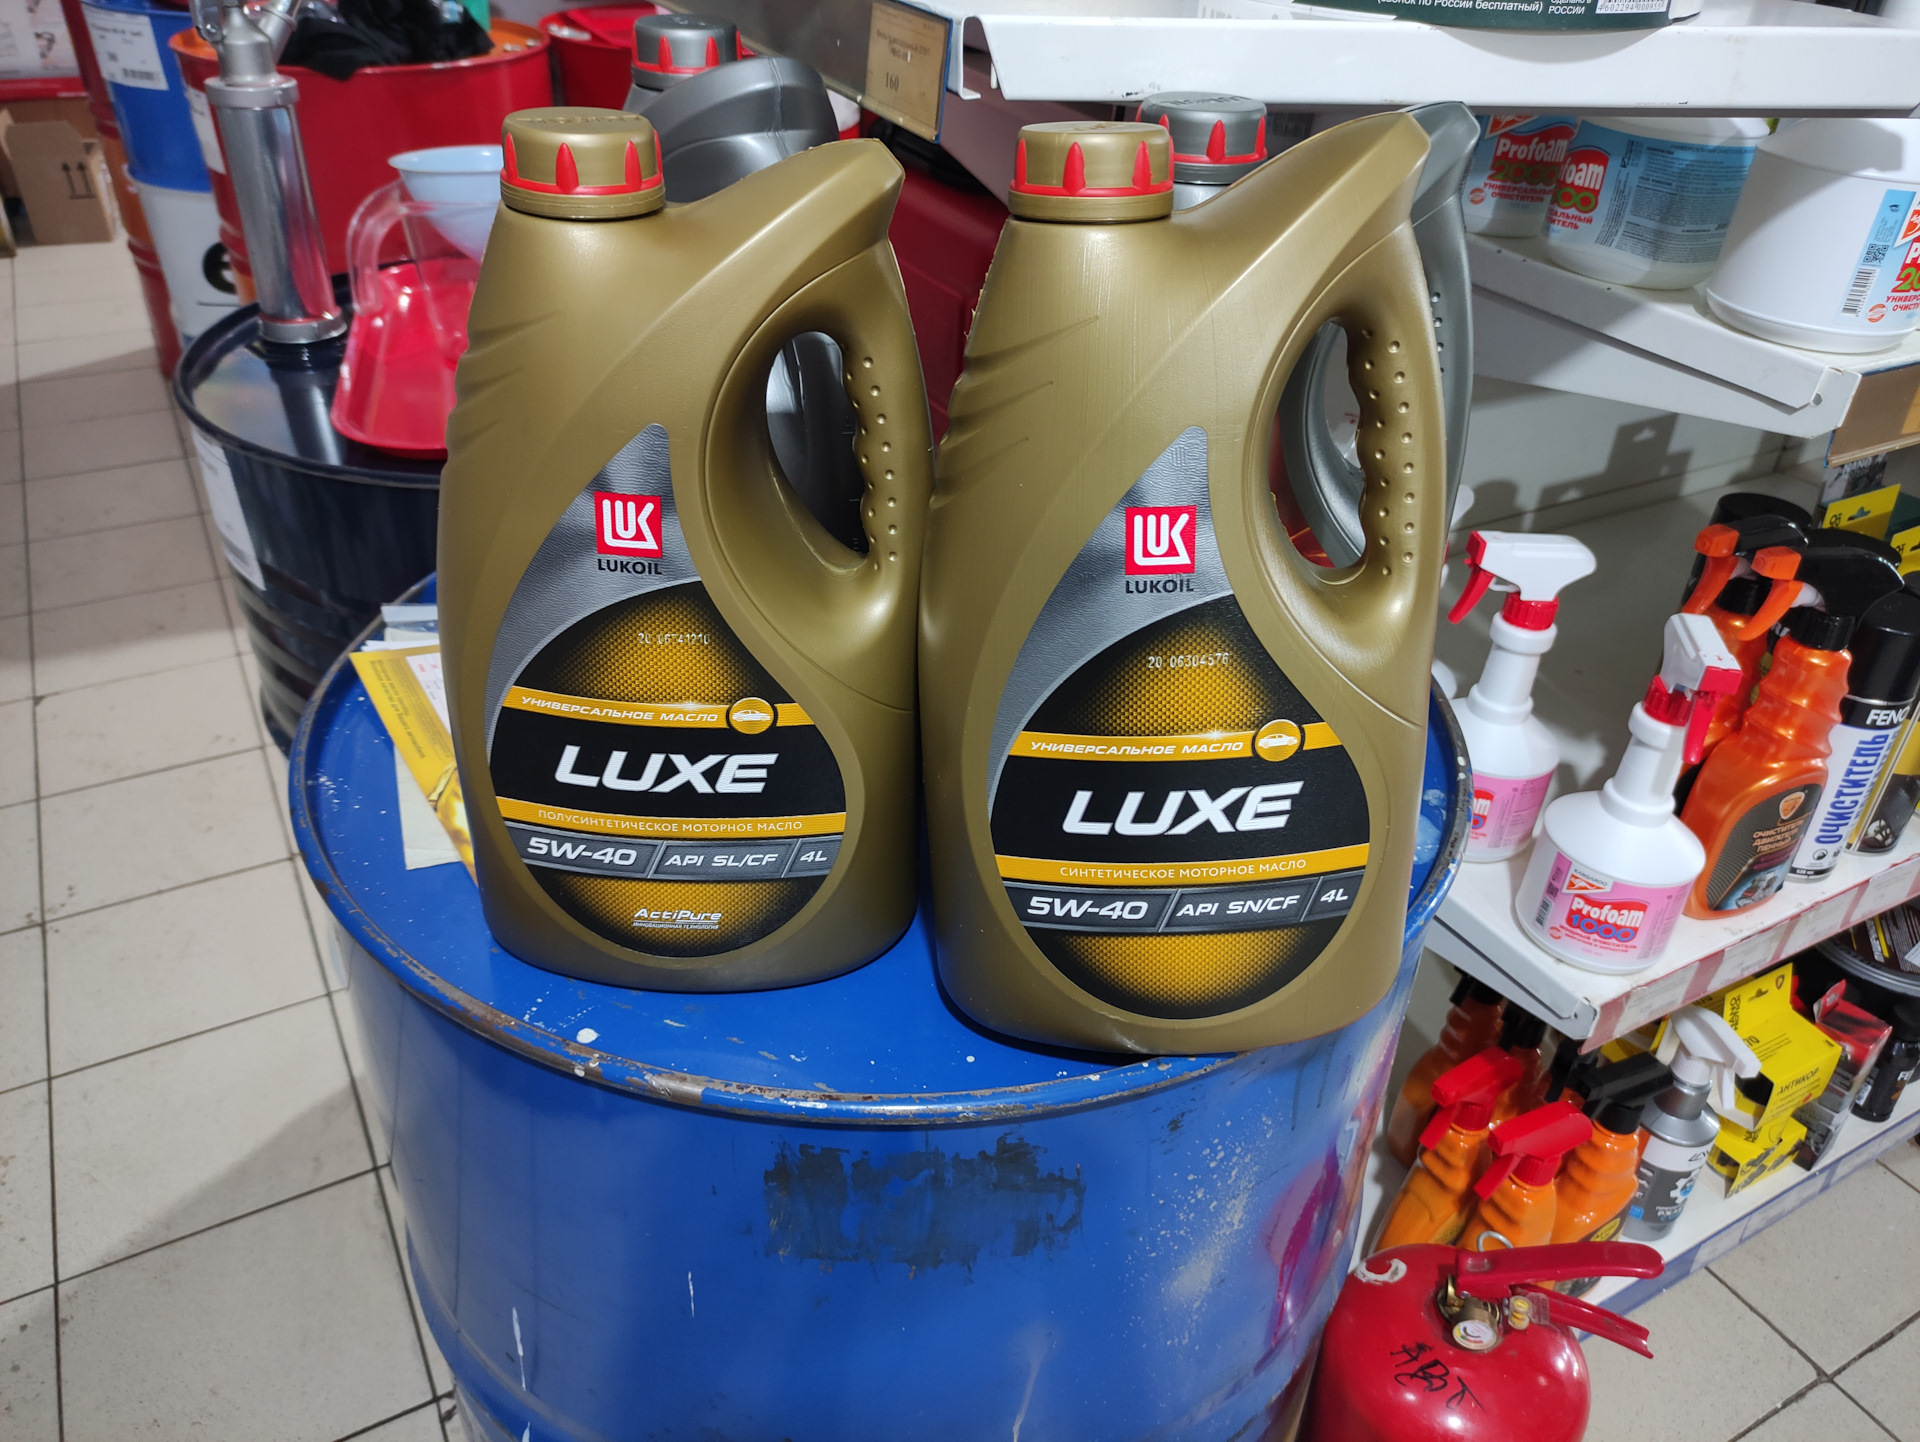 Купить 5 литров масла лукойл. Лукойл 5w40 канистра. Лукойл Люкс 4 литра канистра. Лукойл Люкс 10 40 новая канистра. Lukoil Luxe 5w-40.